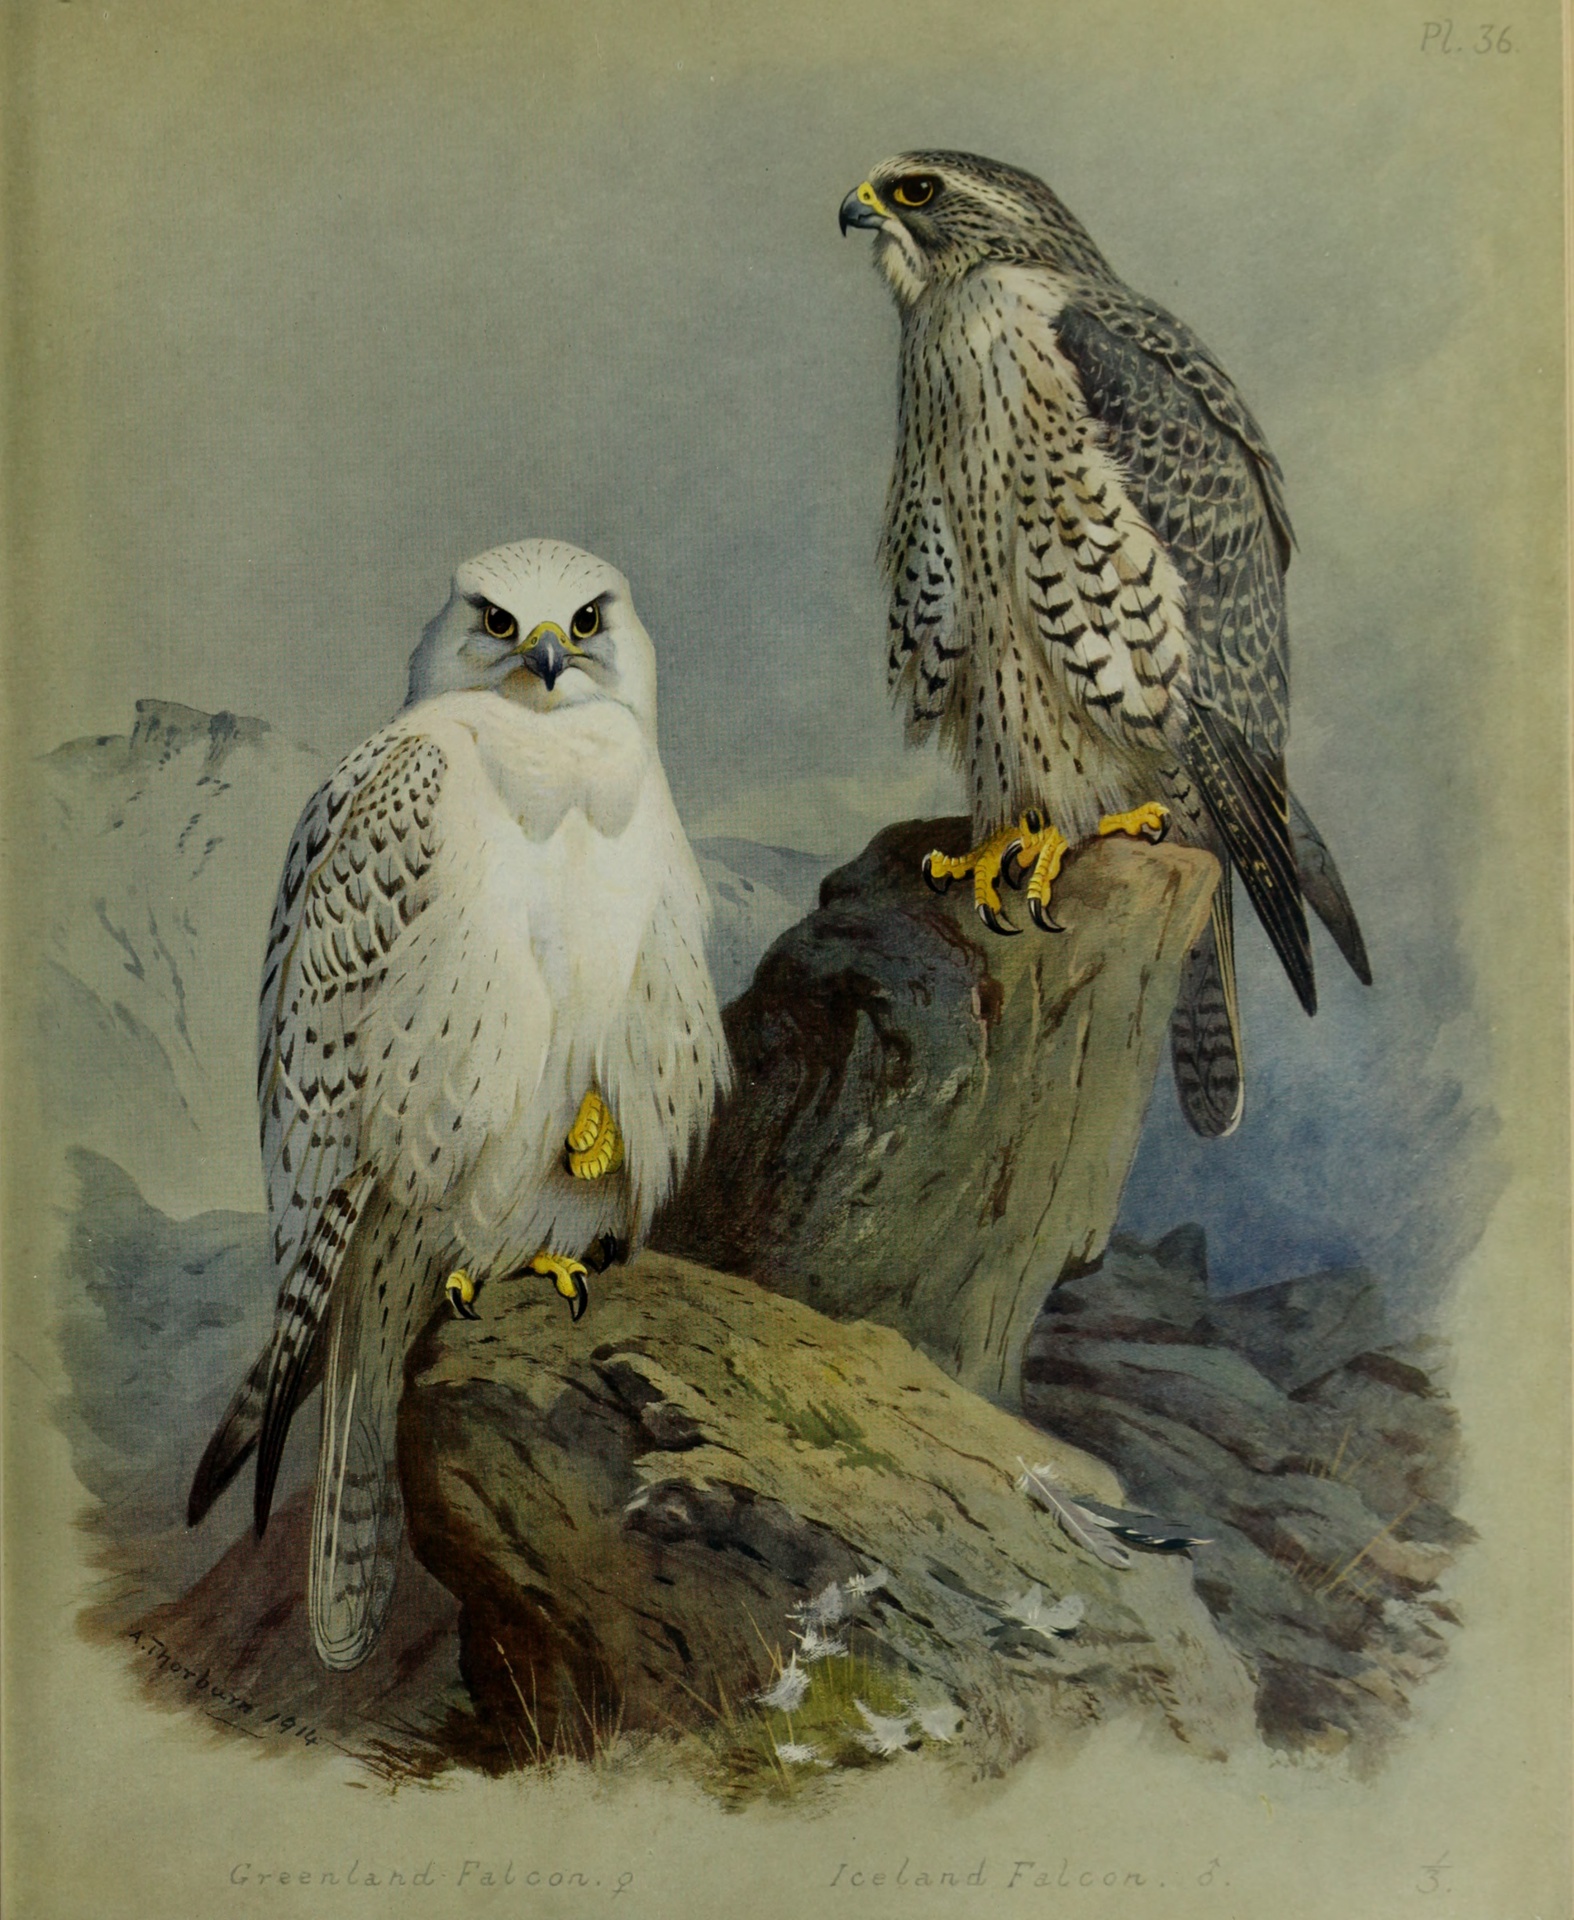 Greenland Falcon & Island Falcon